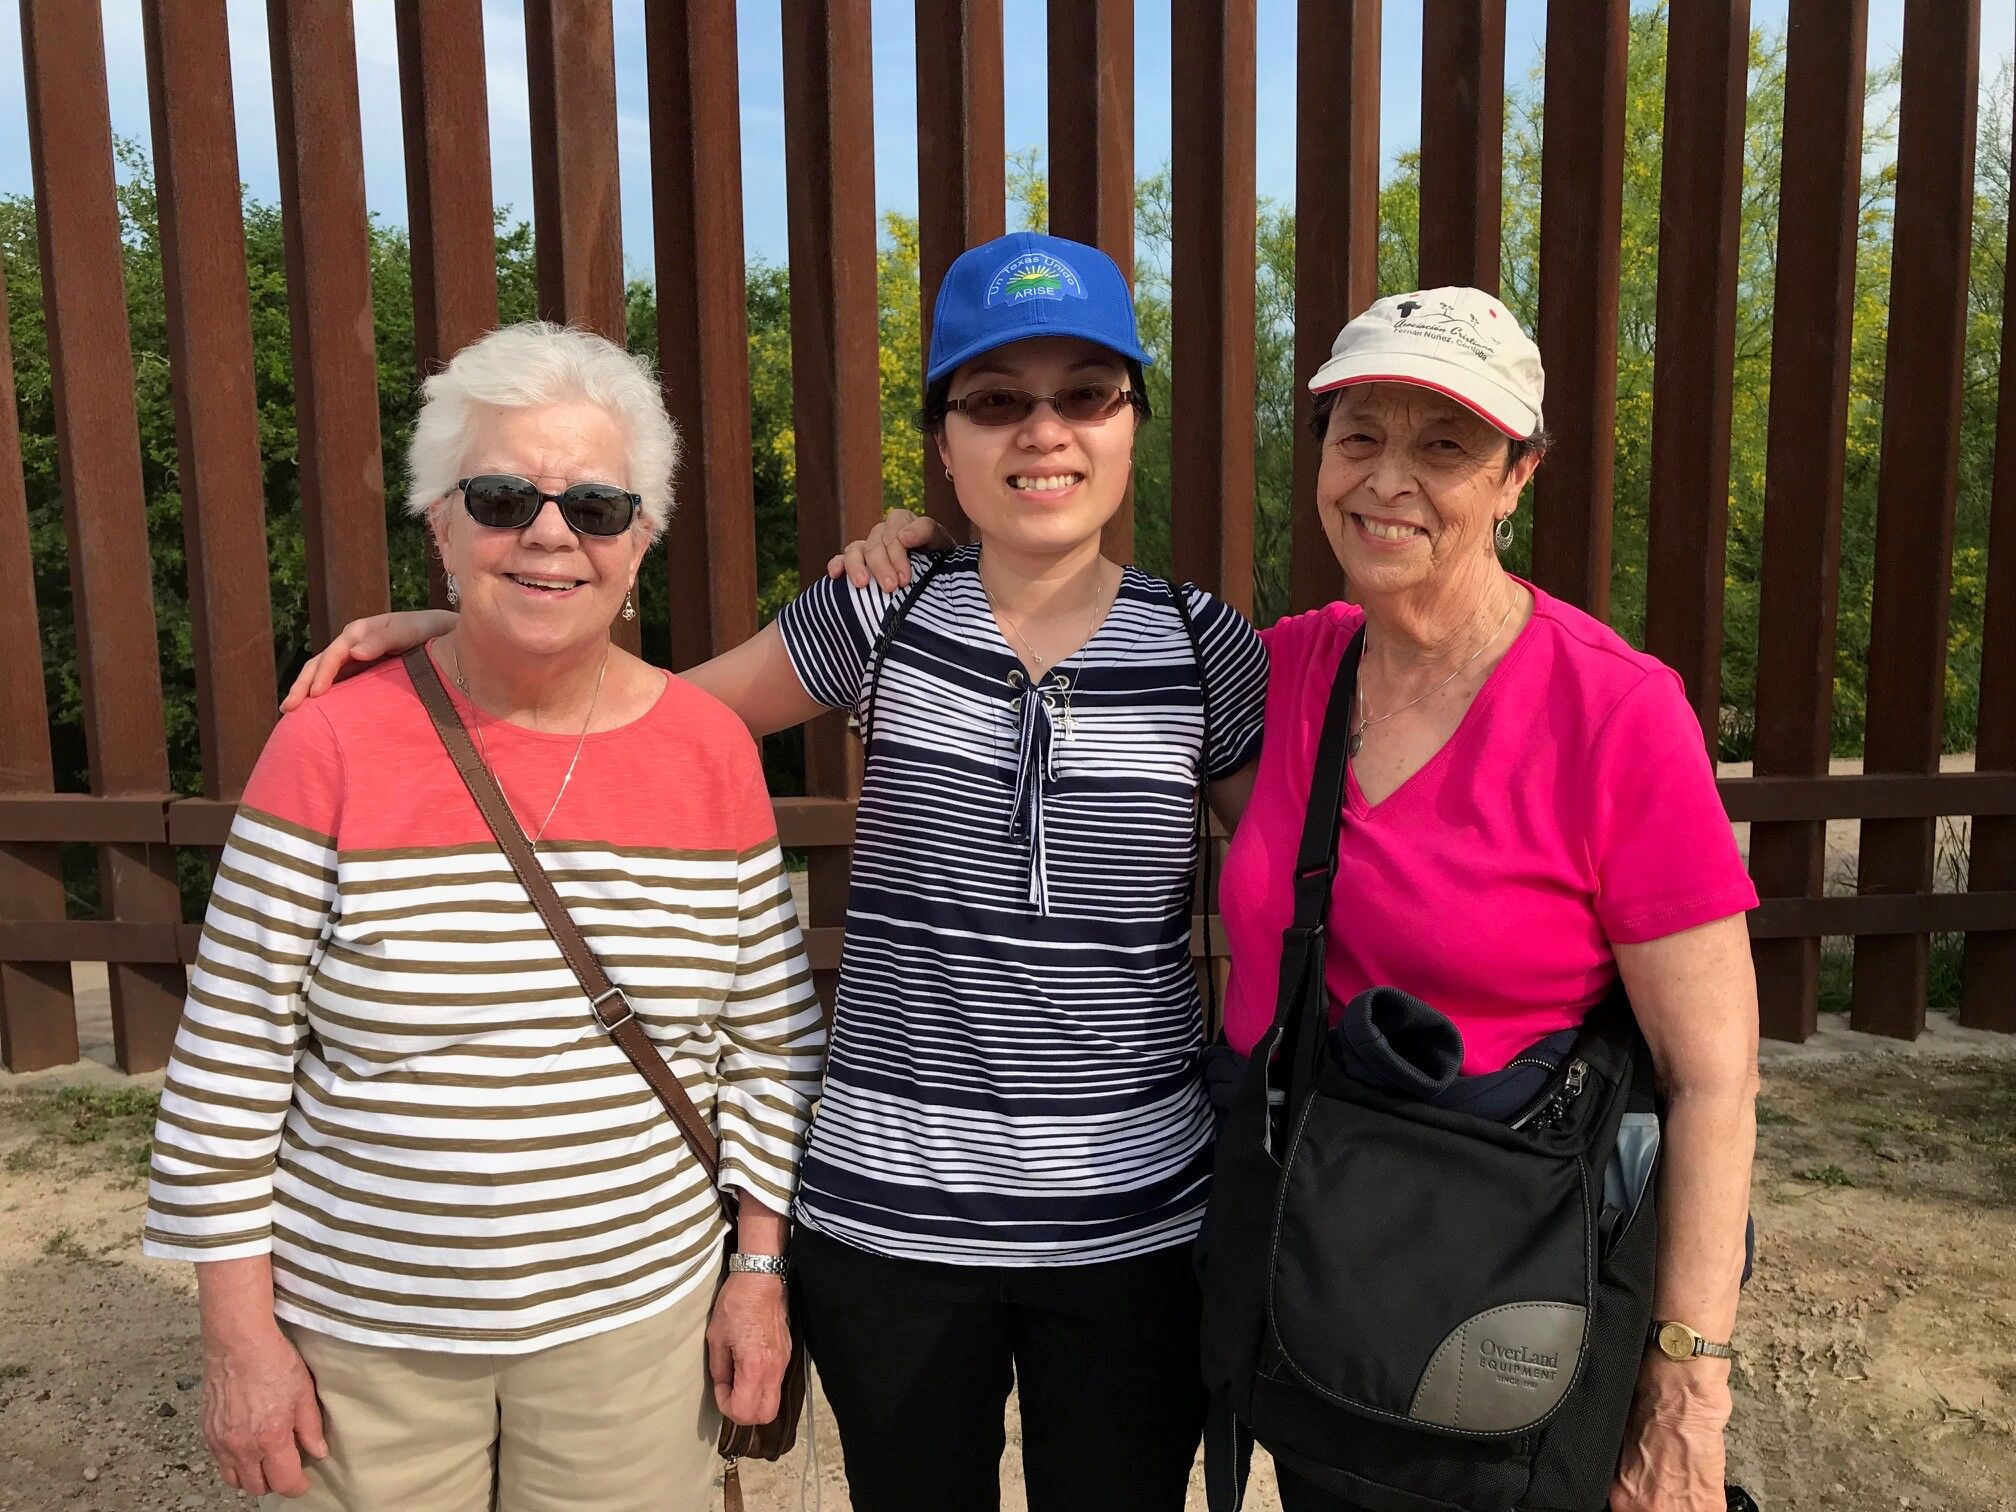 Hermanas Joanne Whitaker, Phuong Dong y Marilyn Morgan de pie junto a la valla de la frontera en Hidalgo, Texas.